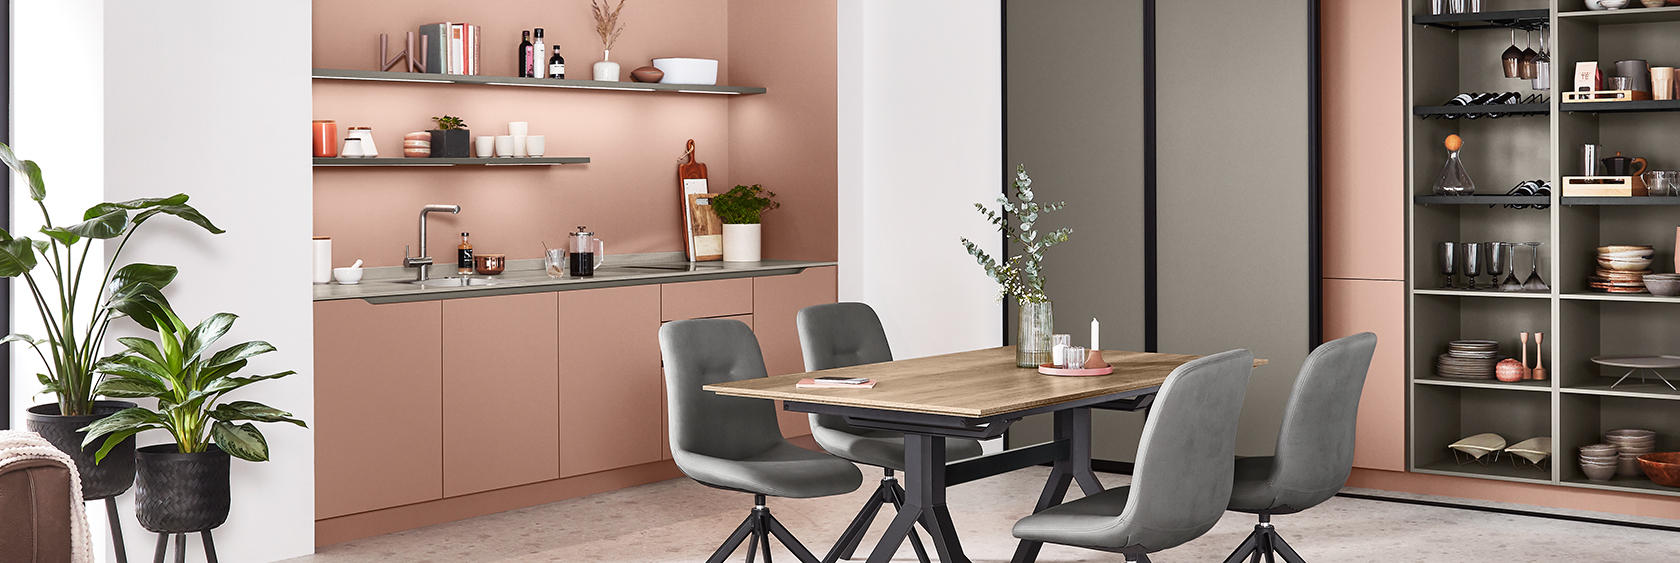 Moderne Kücheninnenräume mit eleganten lachsrosa Schränken, offenen Regalen mit Büchern und Dekor sowie einem gemütlichen Essbereich mit grauen gepolsterten Stühlen.